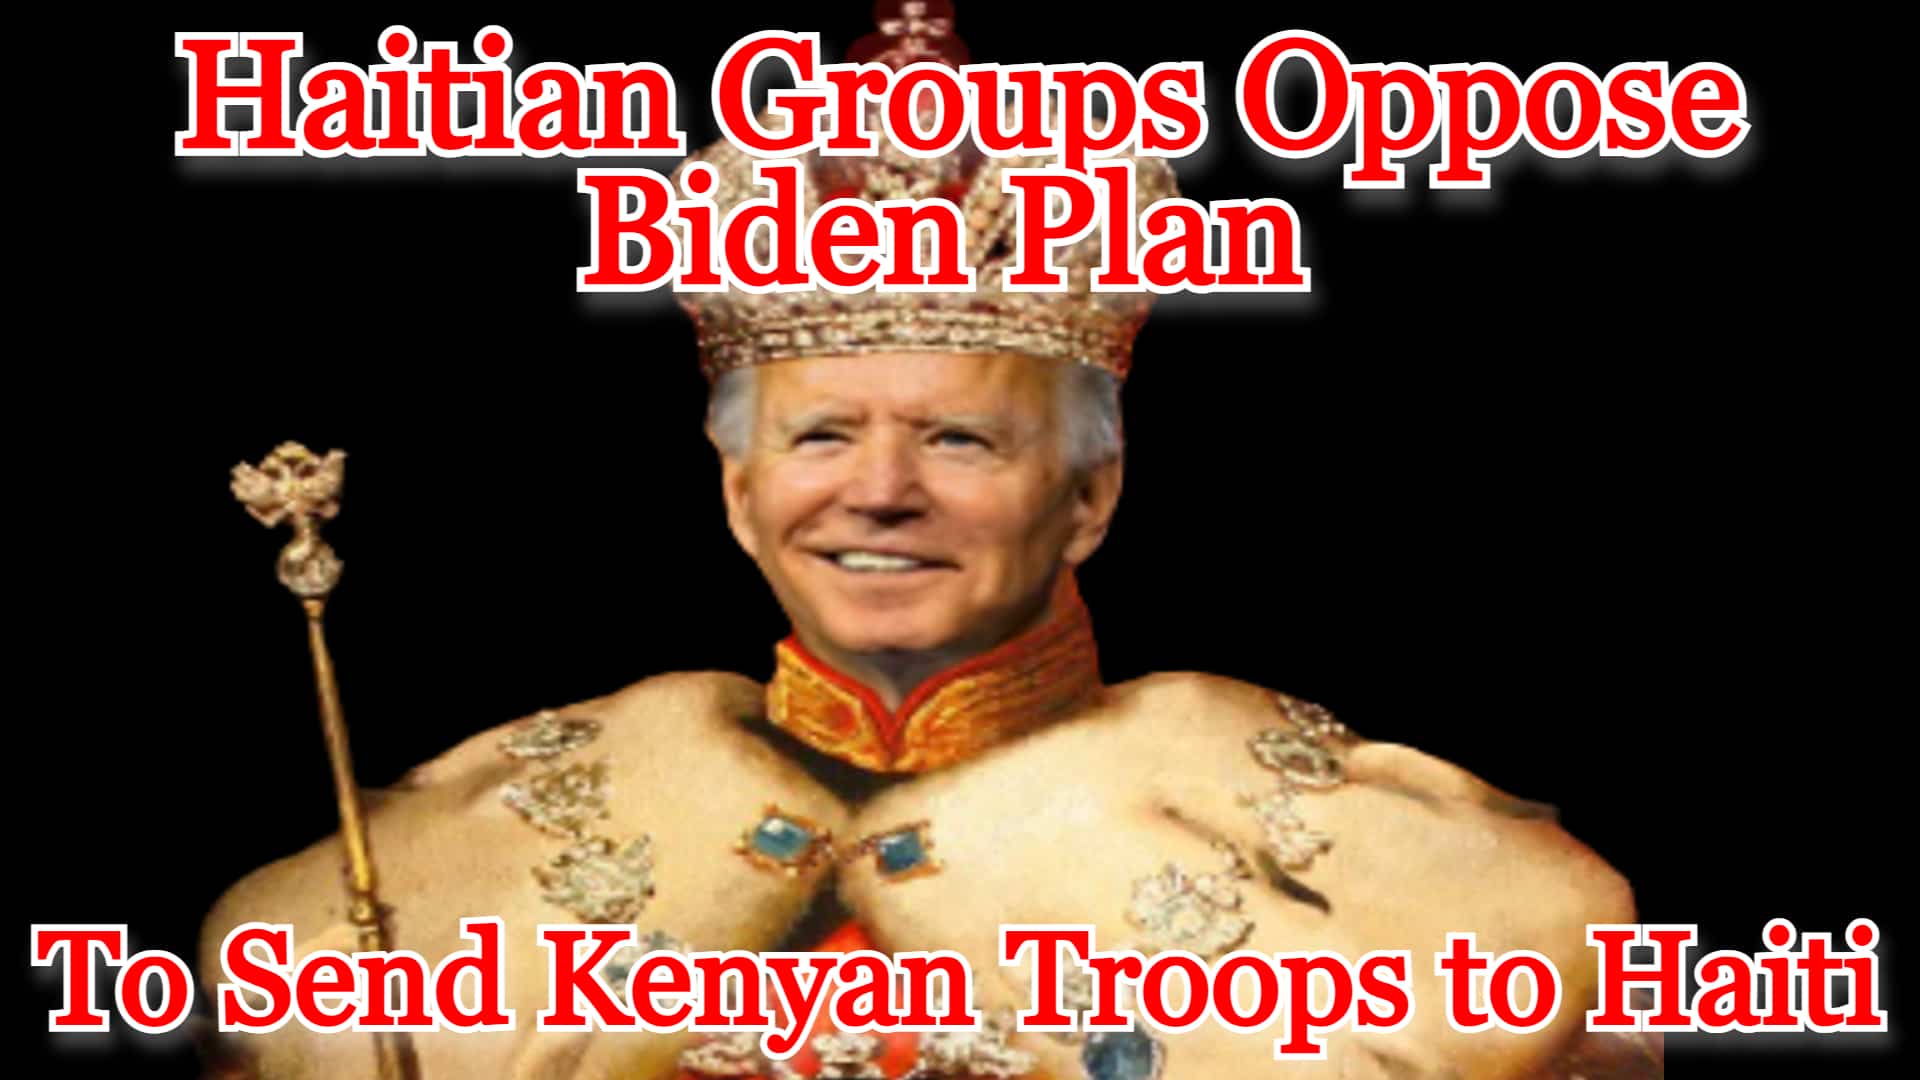 COI #477: Haitian Groups Oppose Biden Plan to Send Kenyan Troops to Haiti